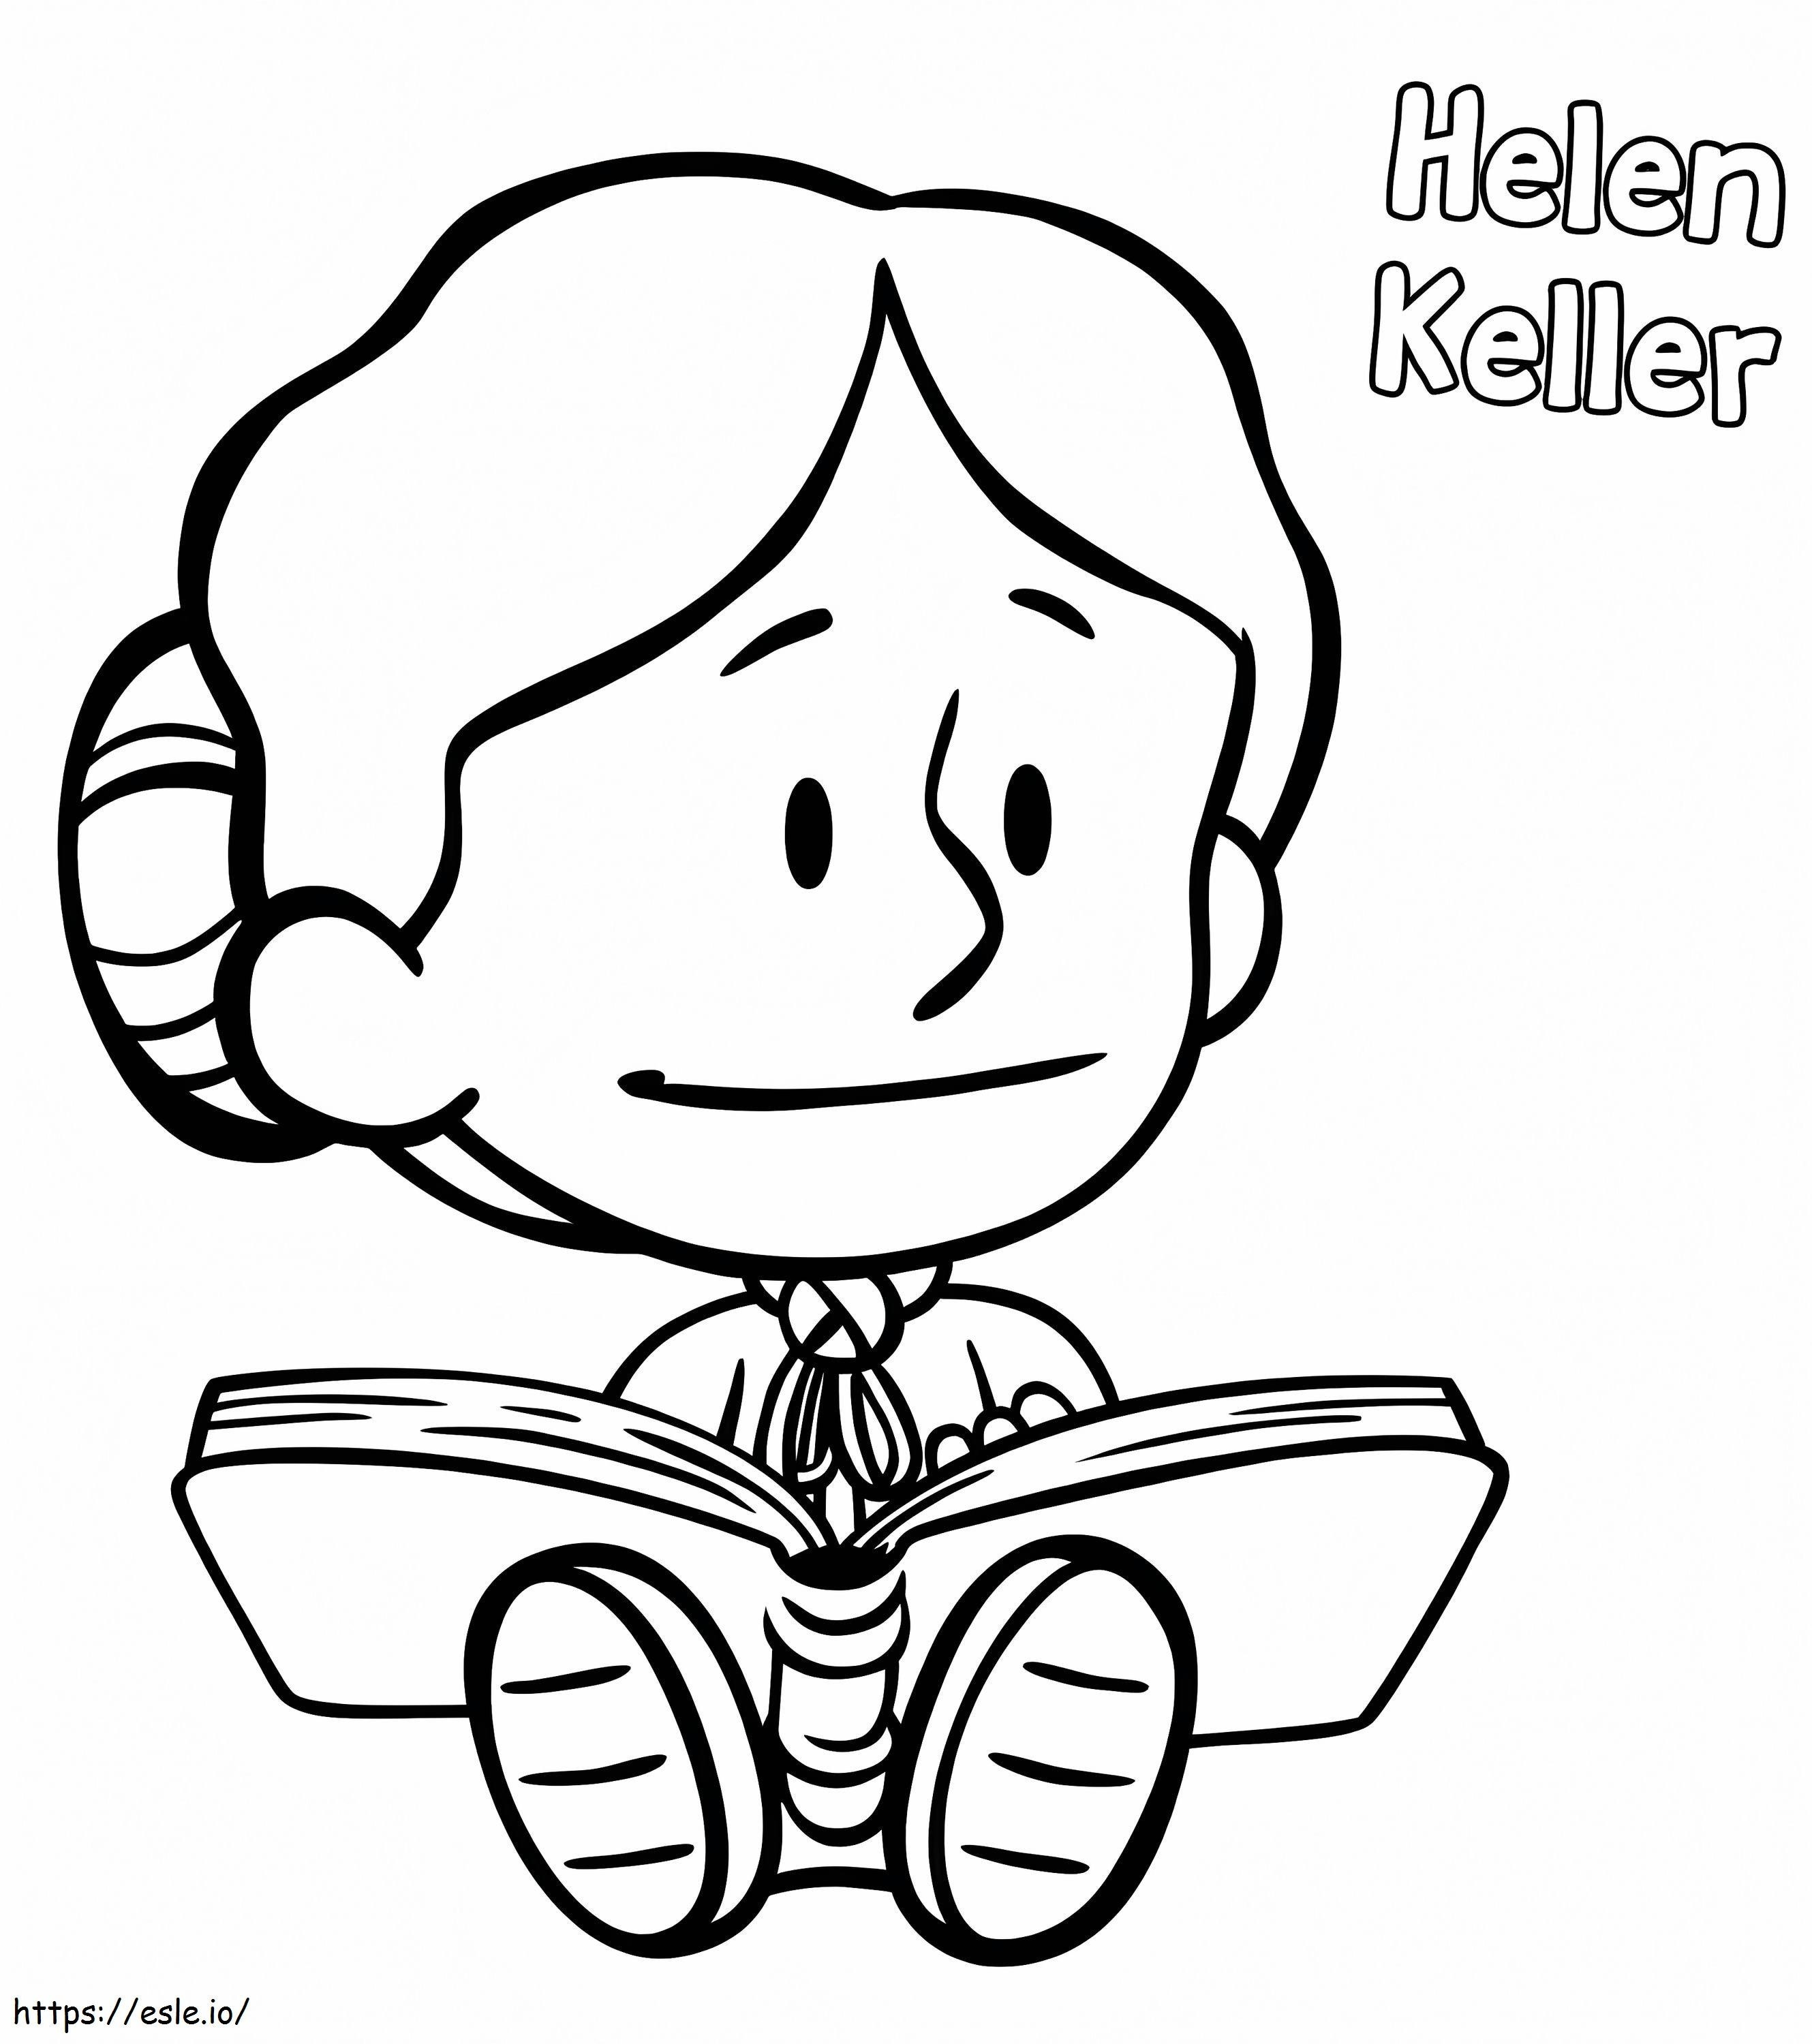 Helen Keller de Xavier Riddle para colorear